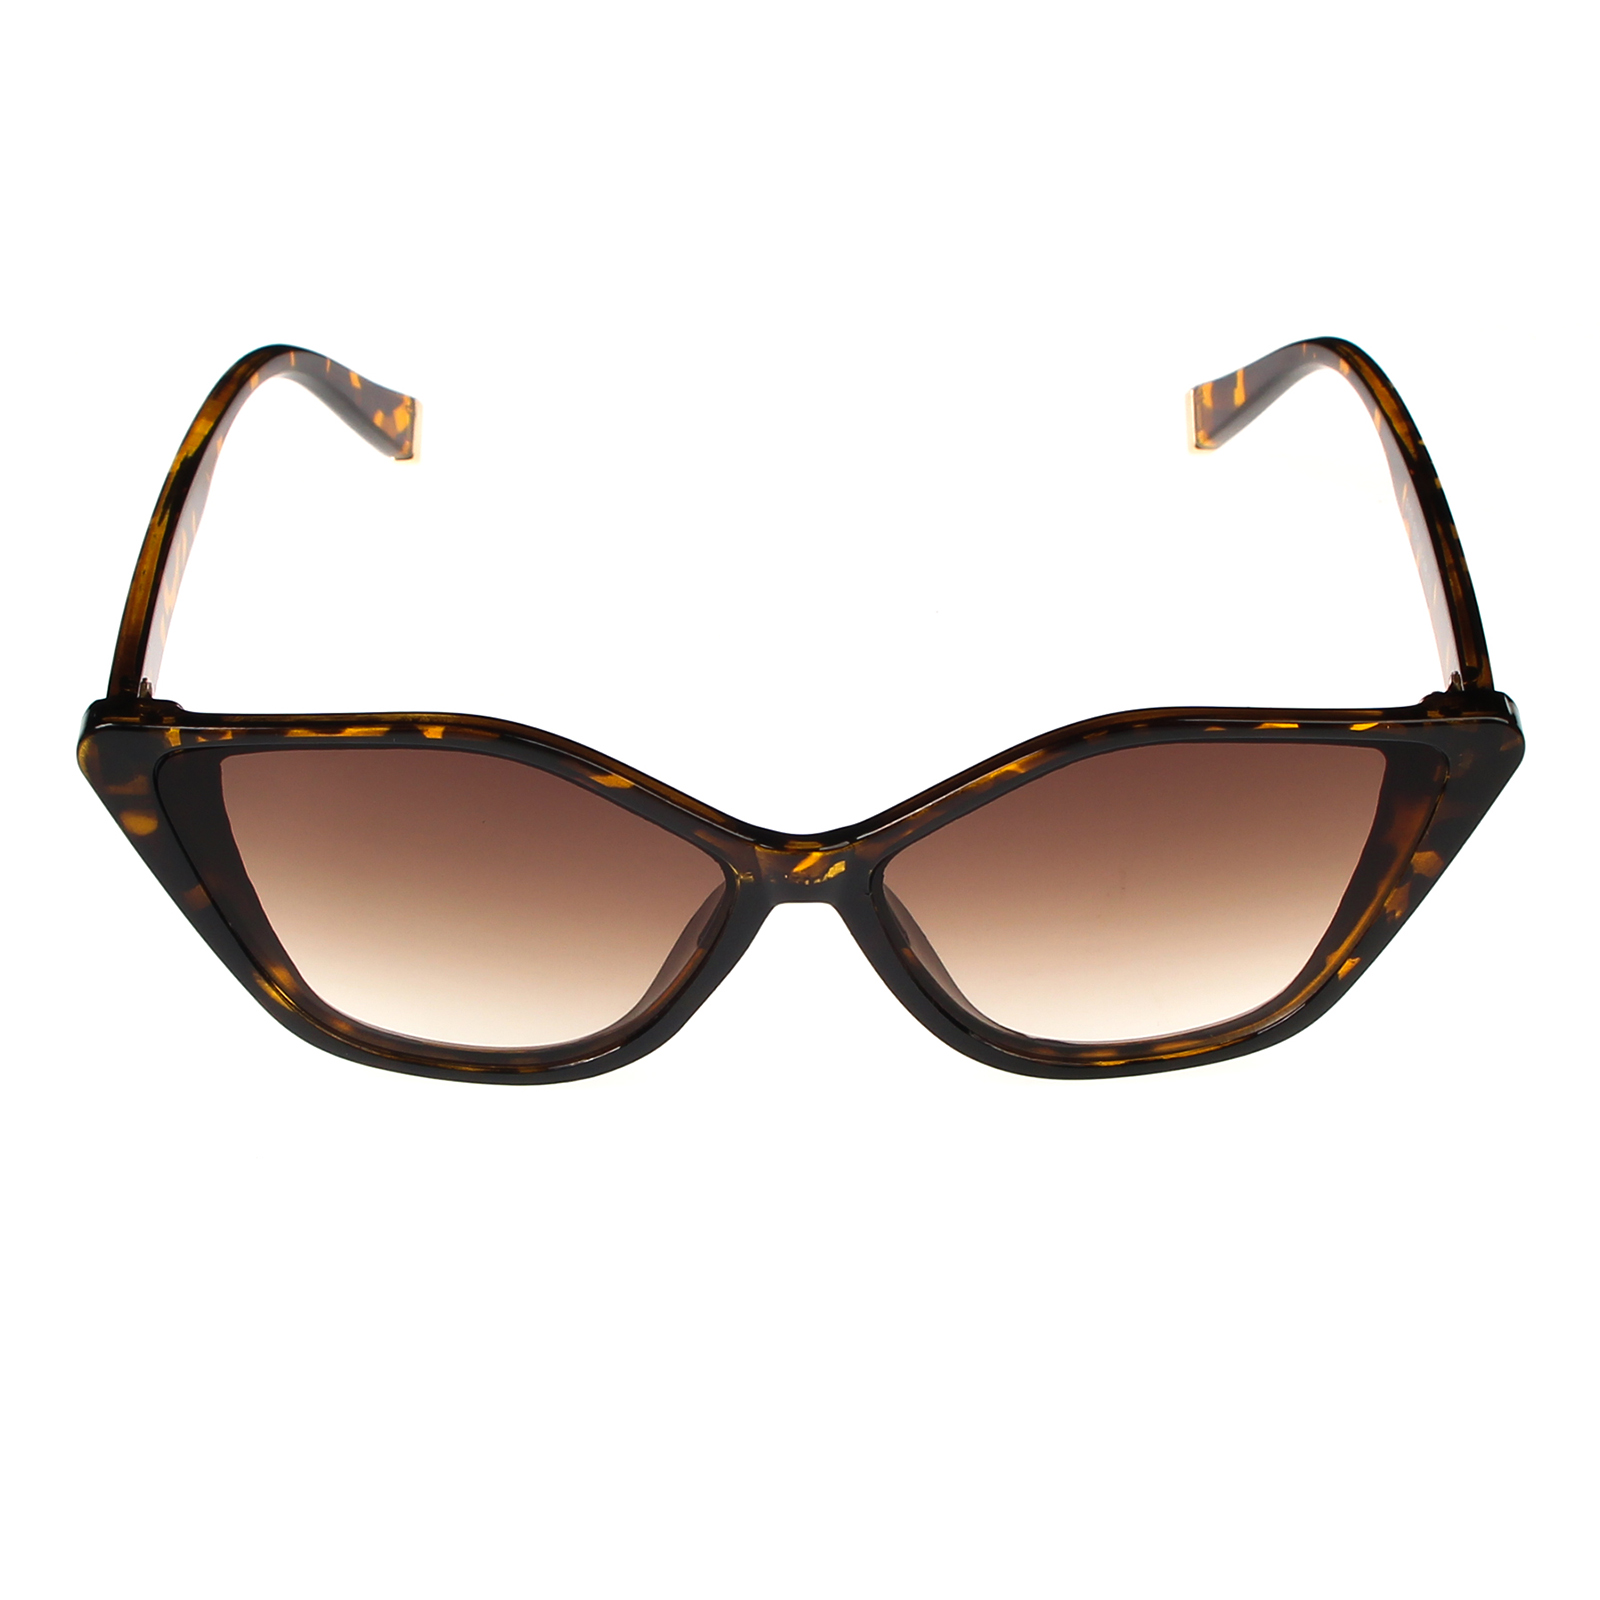 фото Солнцезащитные очки женские pretty mania dp106 коричневые/леопардовые